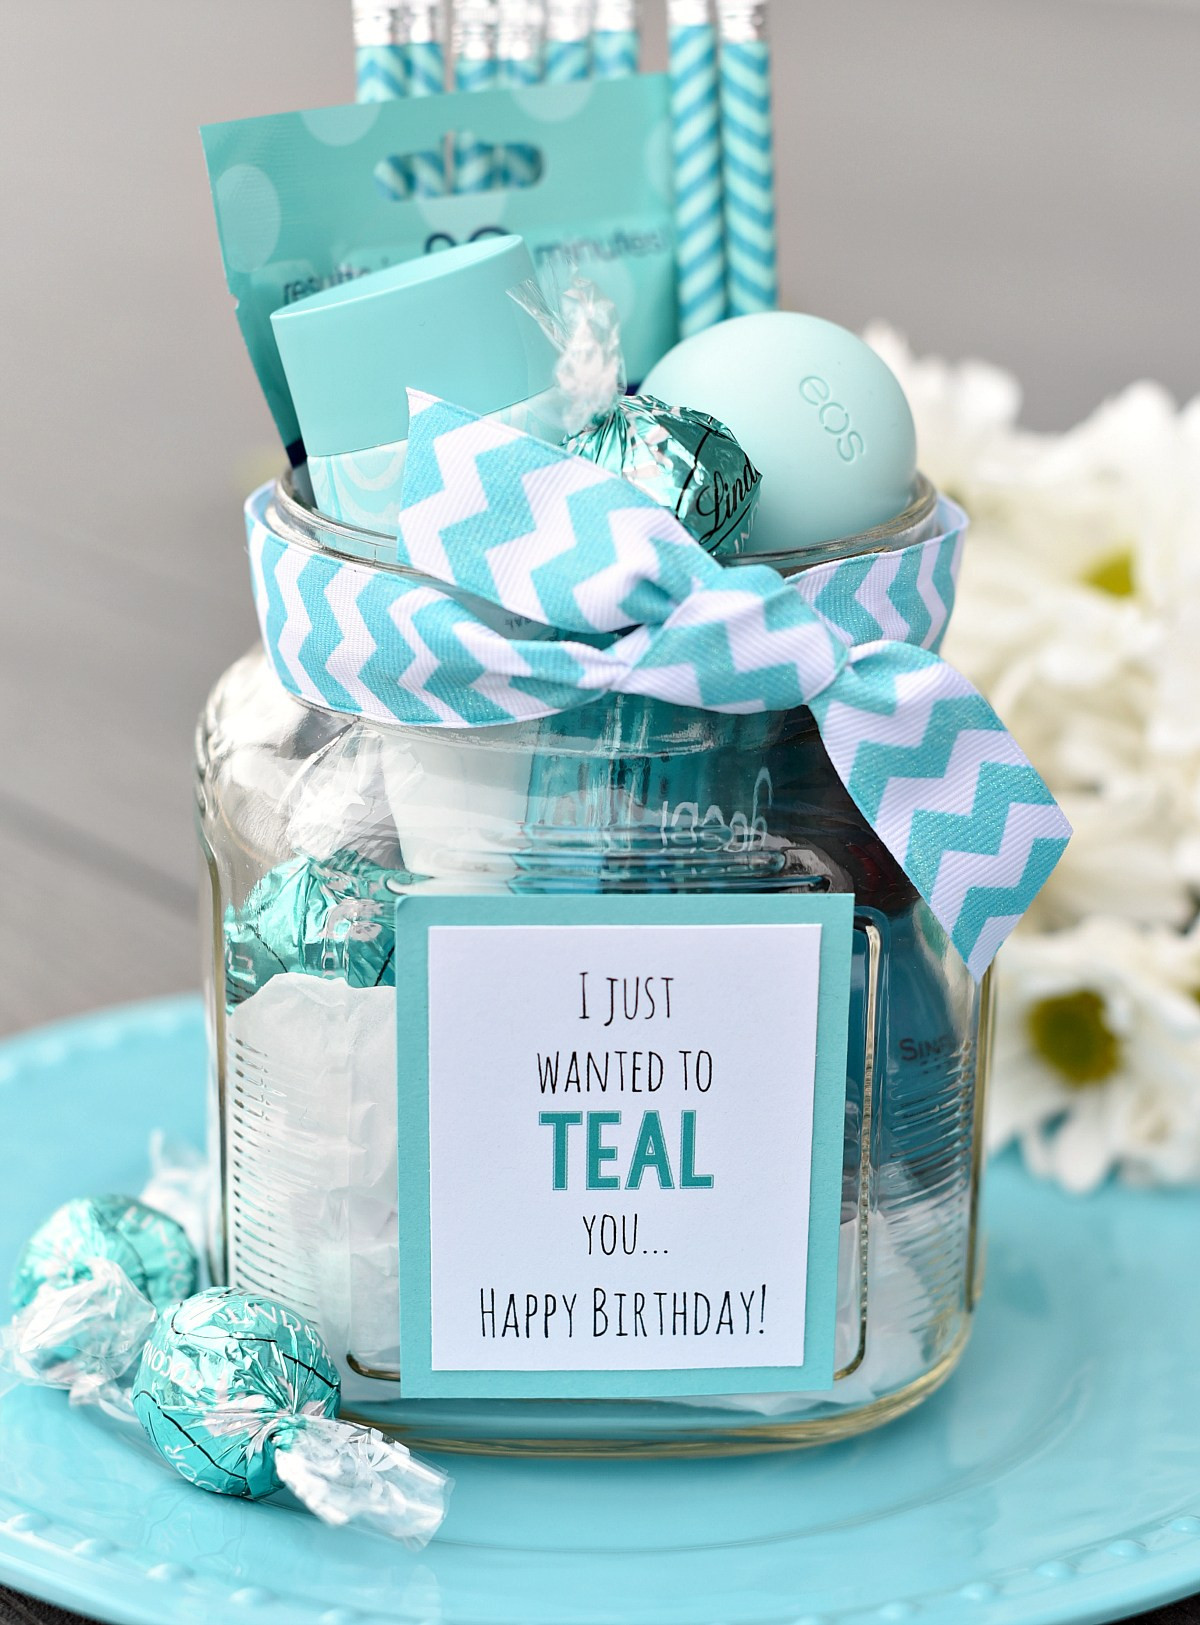 Birthday Gift Basket Ideas For Best Friend
 Teal Birthday Gift Idea for Friends – Fun Squared